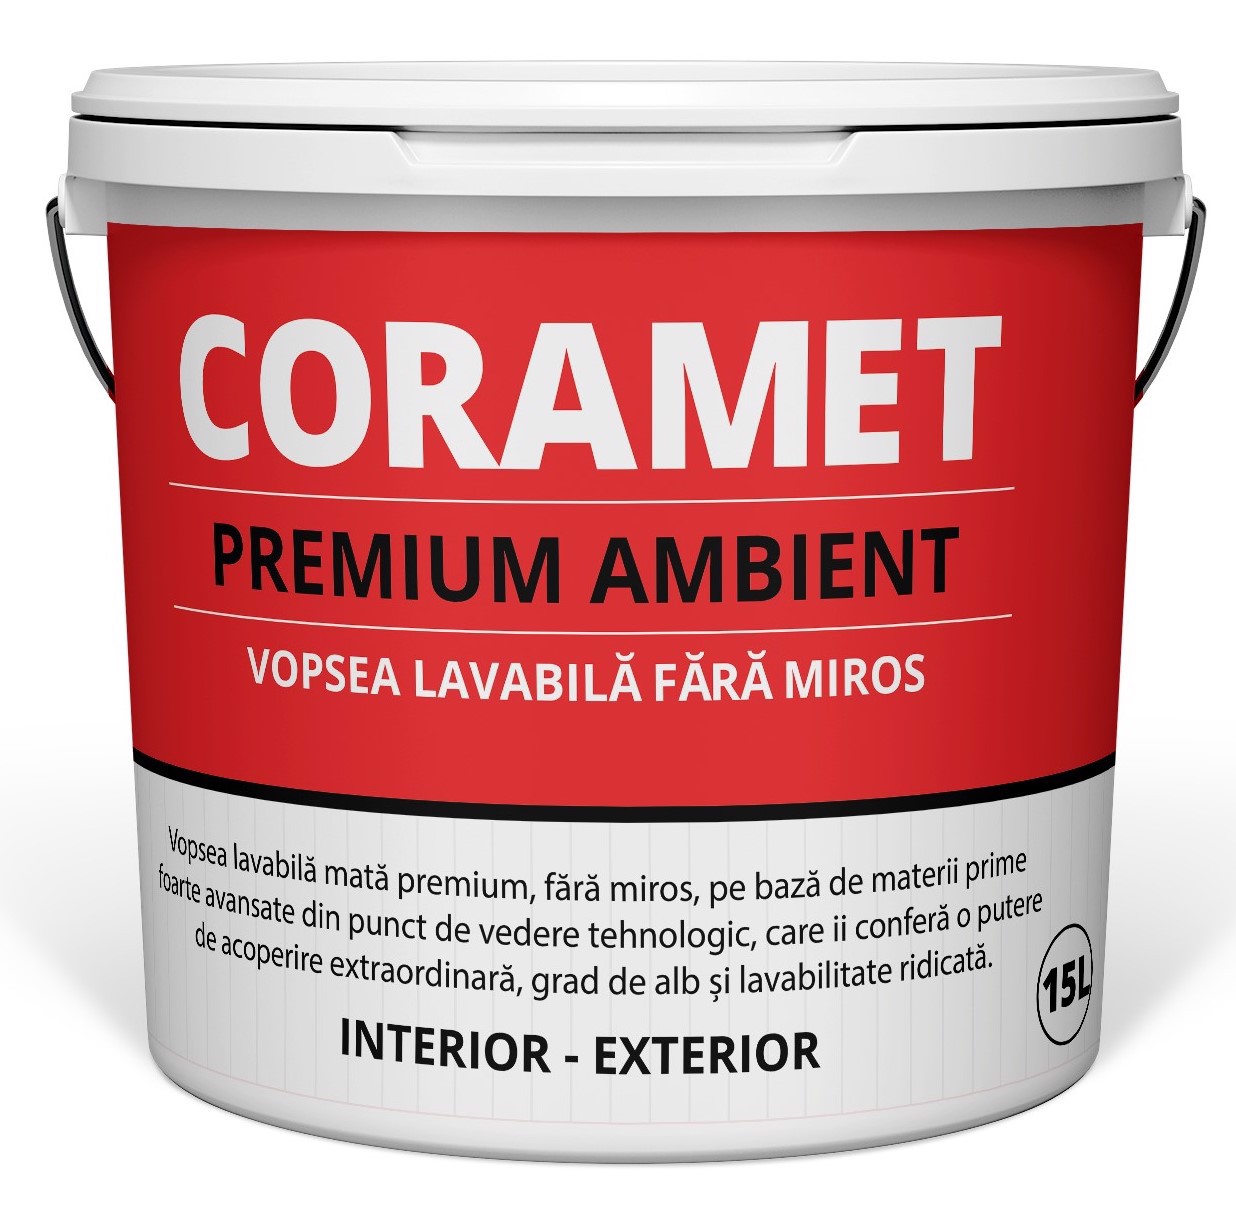 Coramet Premium Ambient Vopsea Lavabila